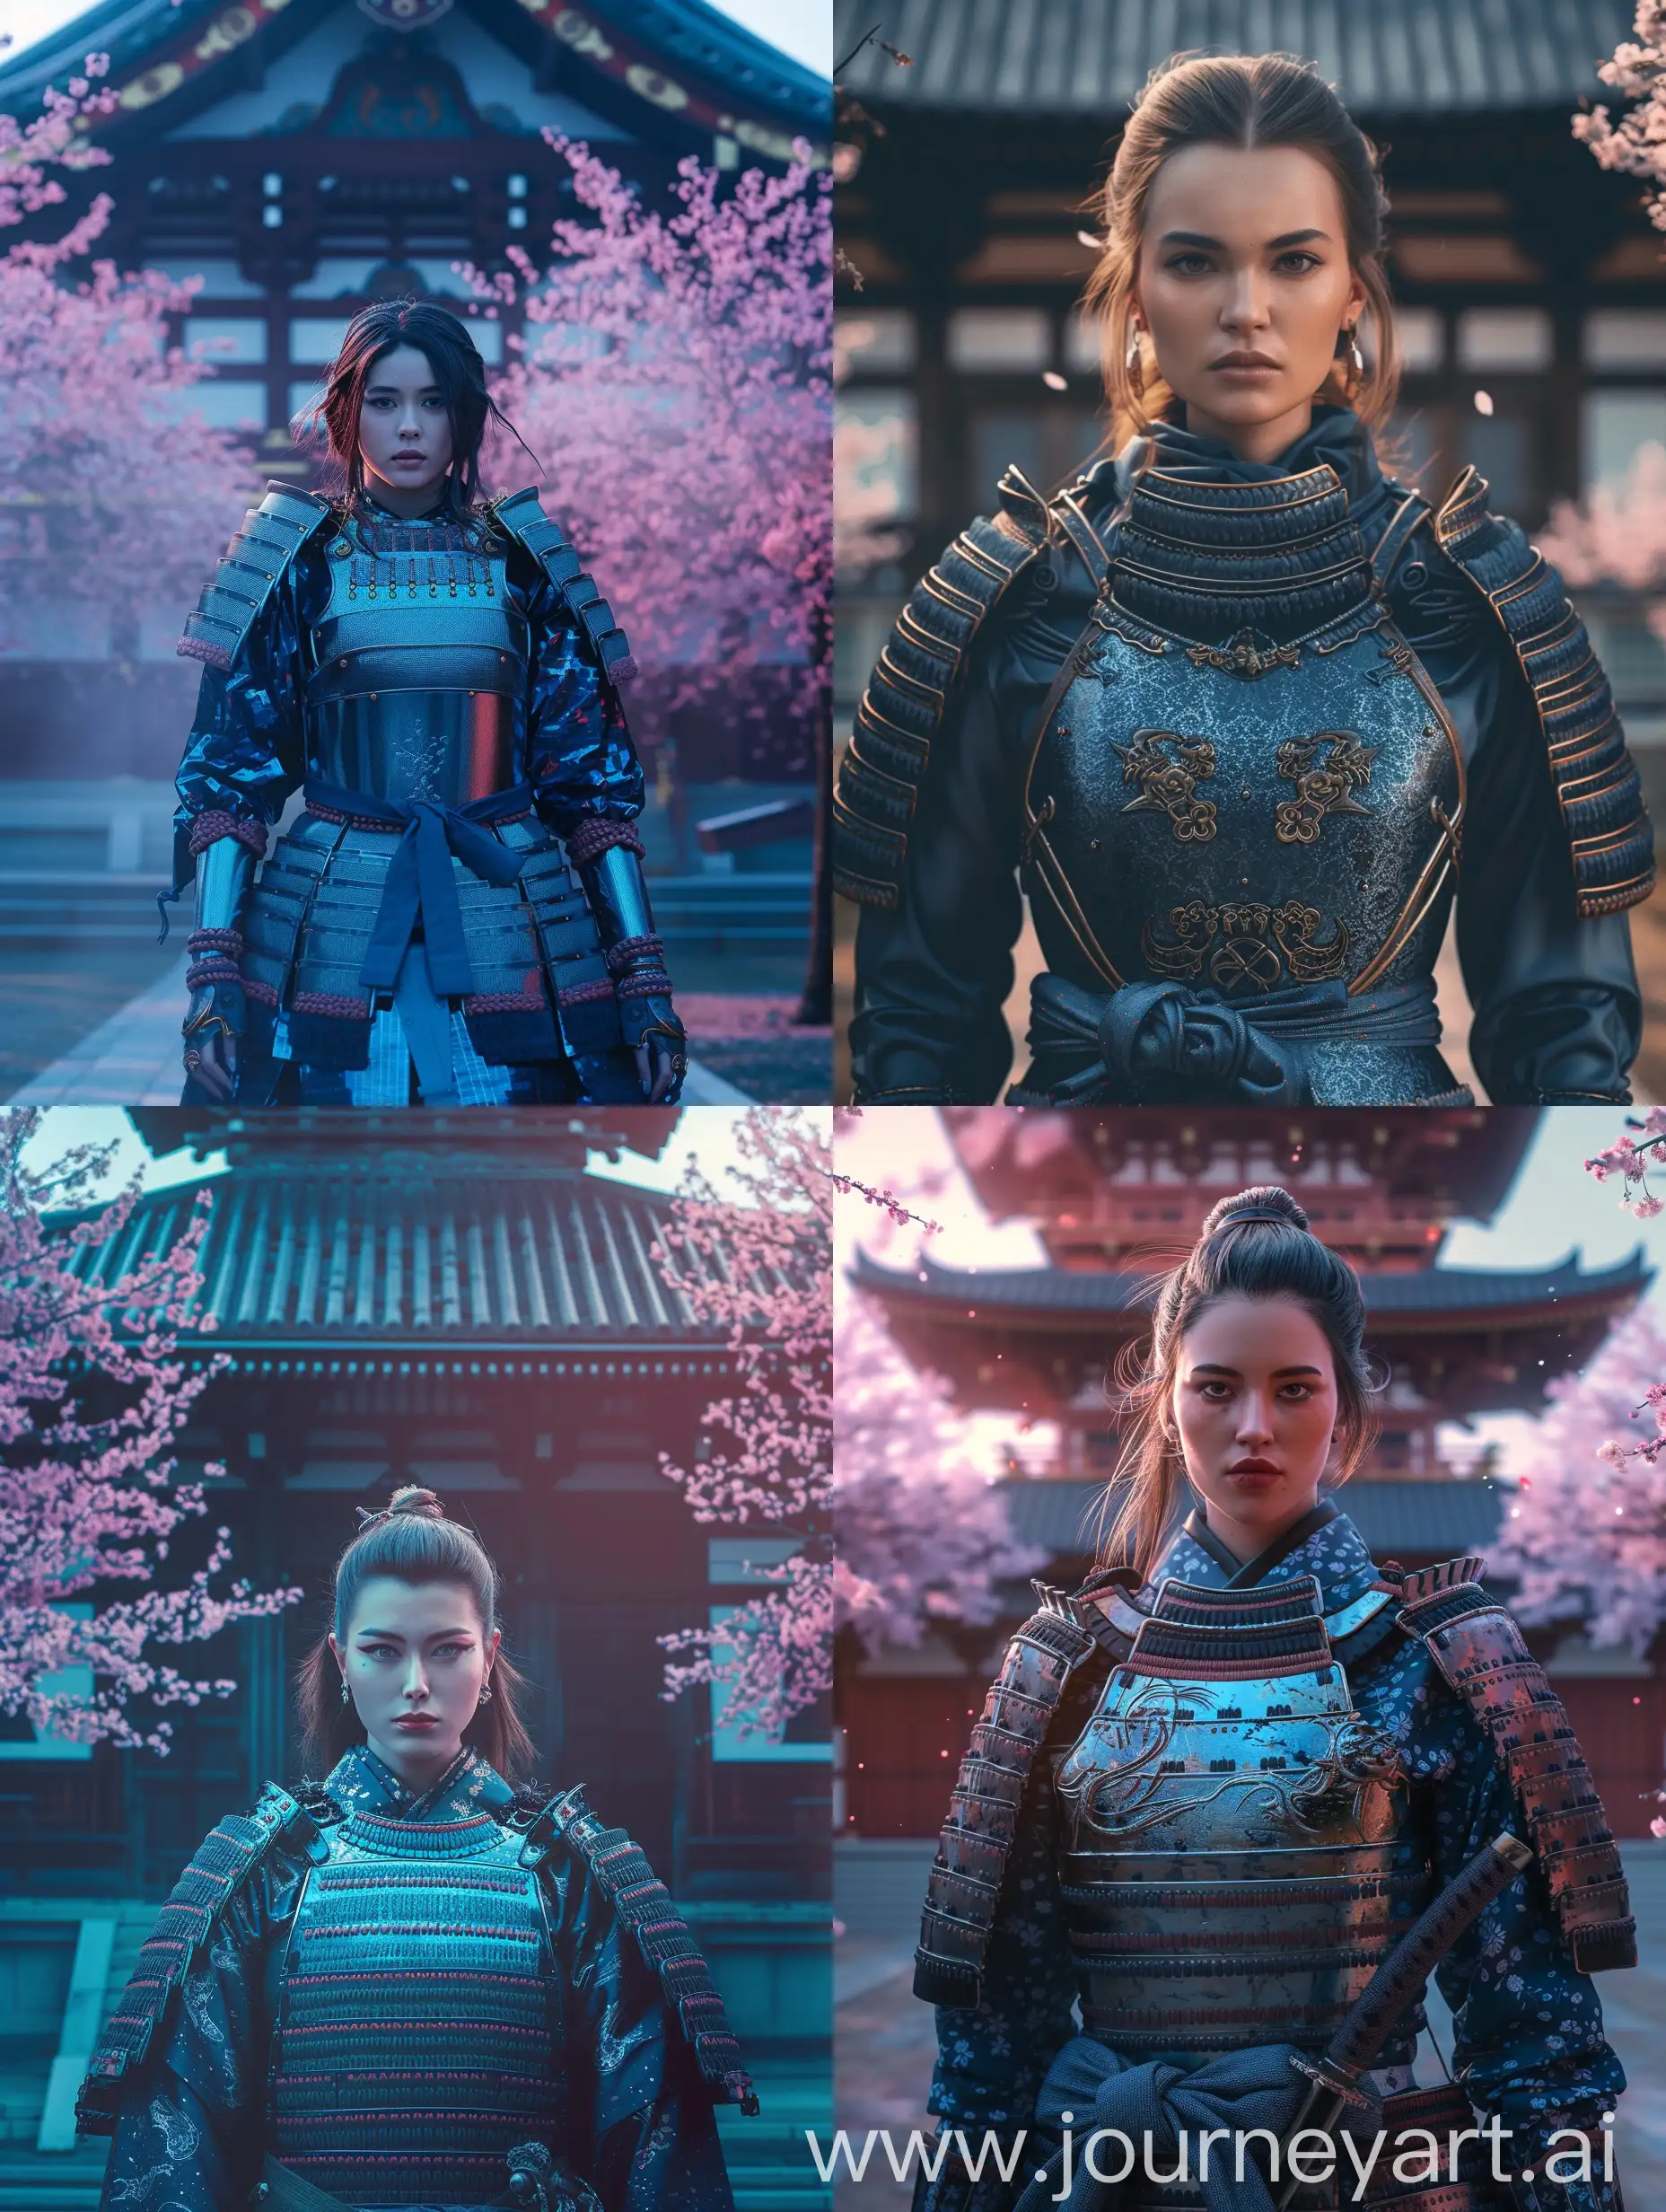 Captivating-Female-Samurai-Warrior-in-Resplendent-Blue-yoroi-Armor-at-Japanese-Temple